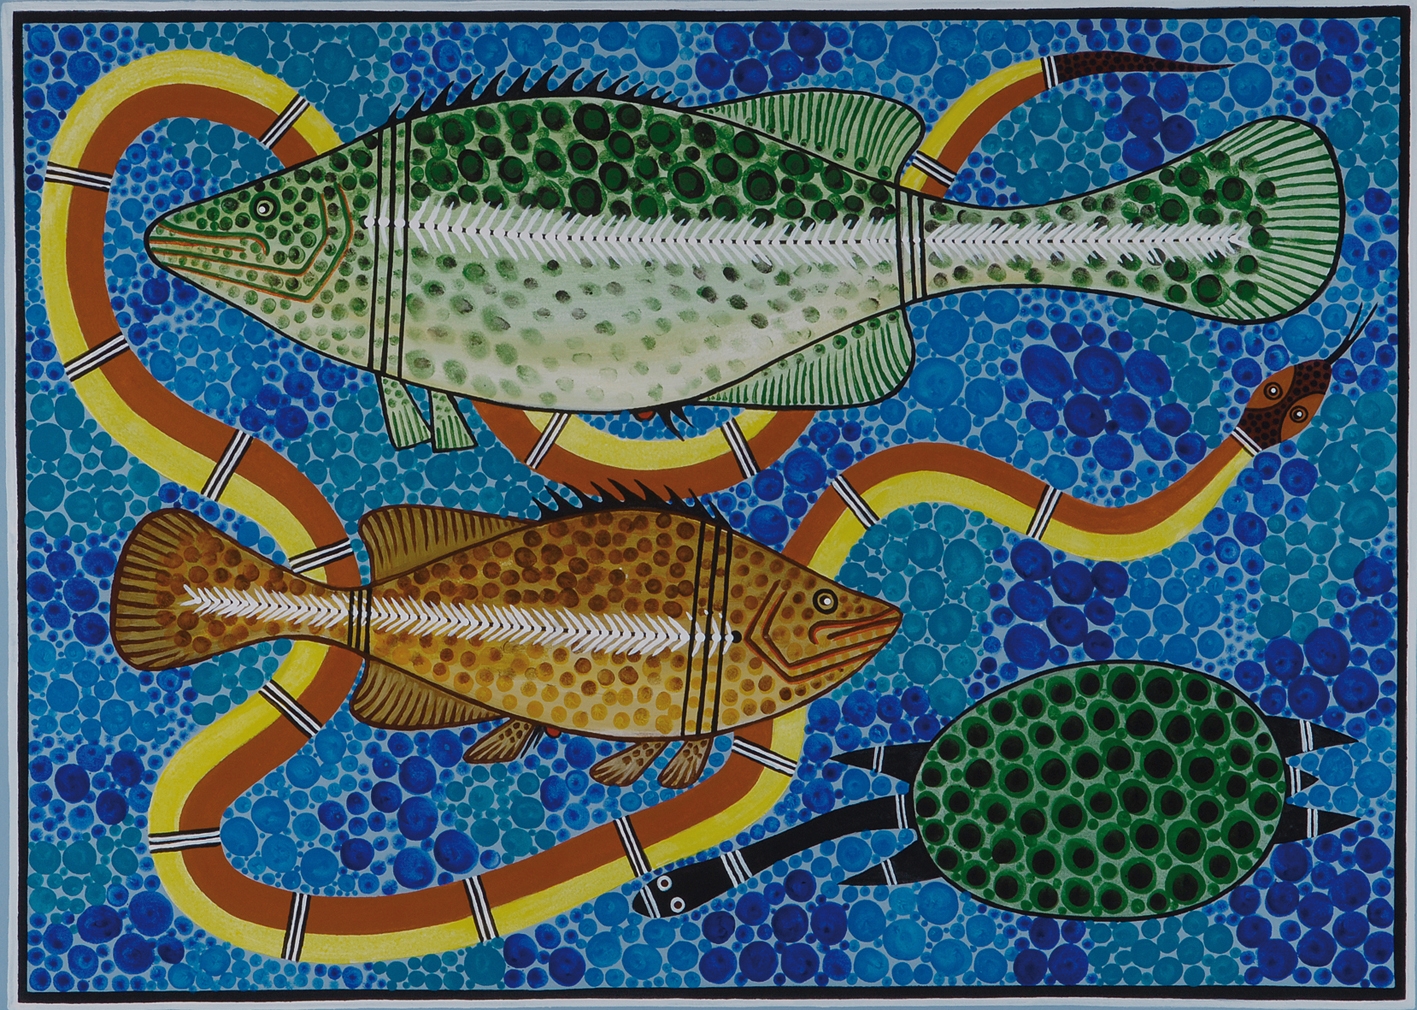 http://wakeup-world.com/wp-content/uploads/2014/04/Aborignal-fishing.jpg